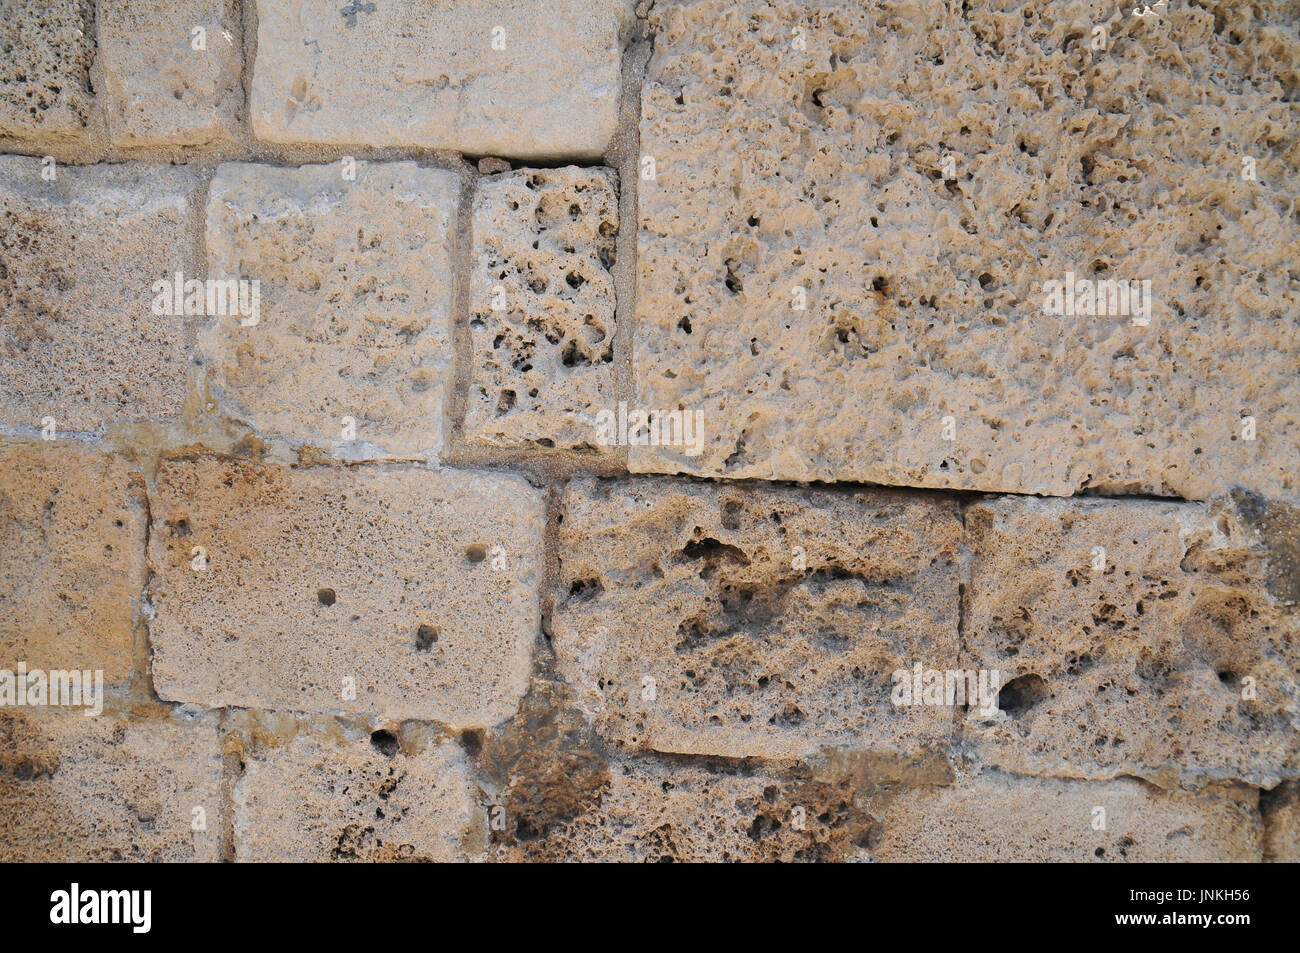 Close up d'un mur construit à partir du pétrole brut de briques Kurkar un grès calcaire fossilisé ou les dunes de sable de mer commun dans Israël. Photographié à Acre Banque D'Images